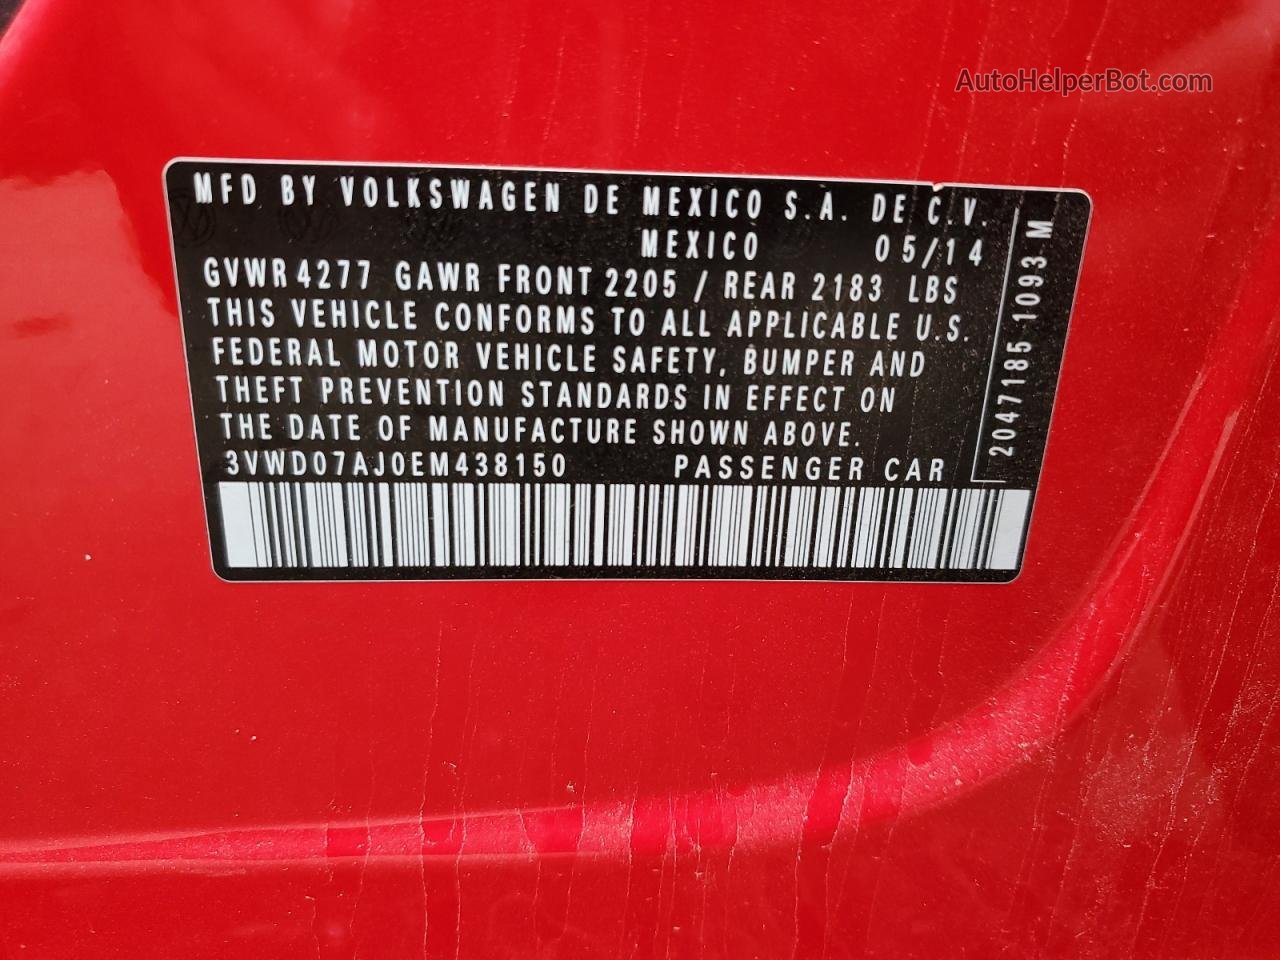 2014 Volkswagen Jetta Se Красный vin: 3VWD07AJ0EM438150